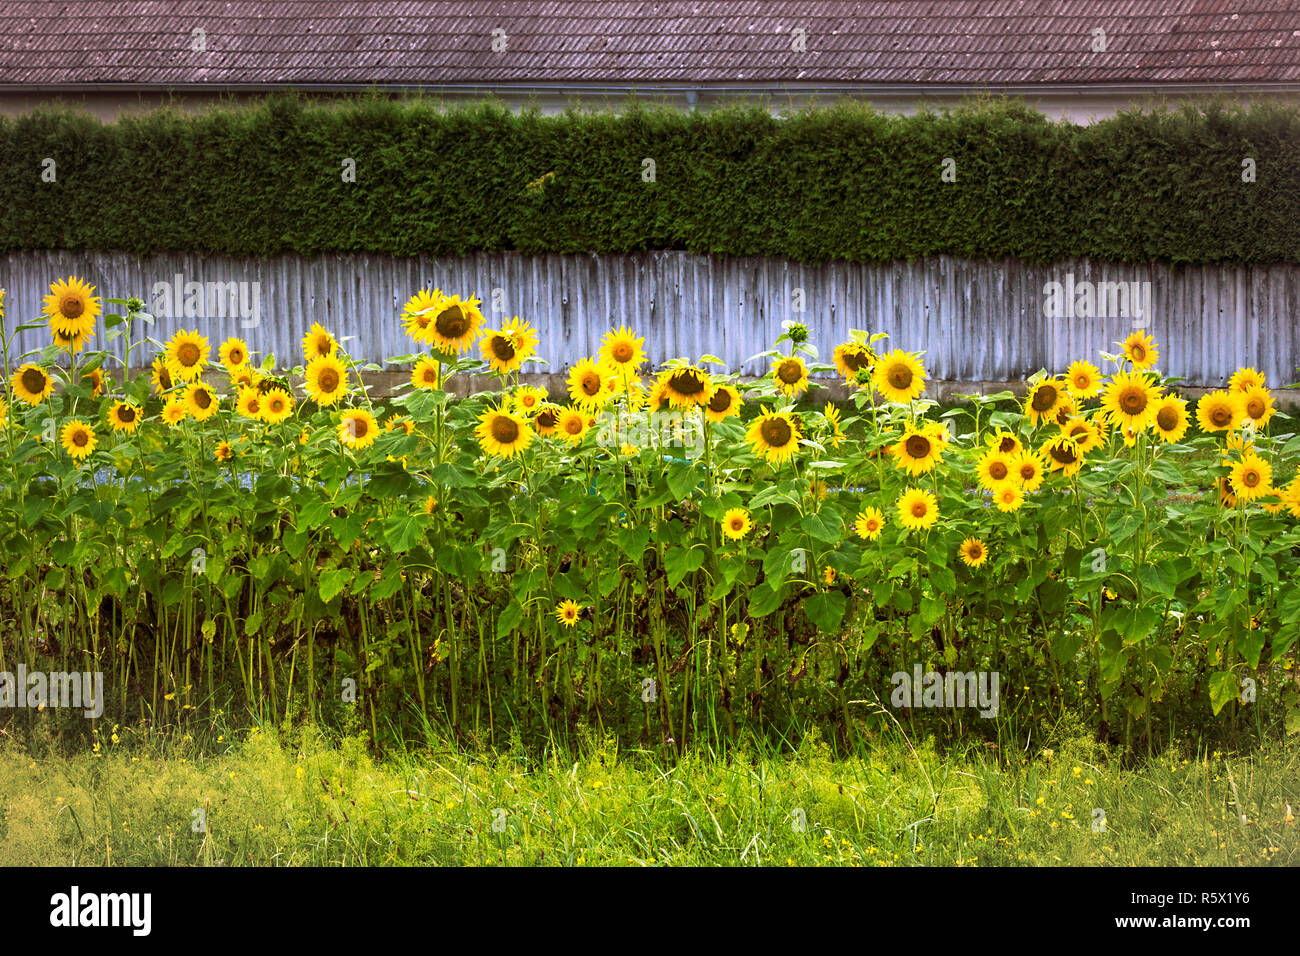 Las materias de florido jardín girasoles contra el fondo de la valla de madera y cobertura. Jardín rural flor de Austria. Campiña. Foto de stock